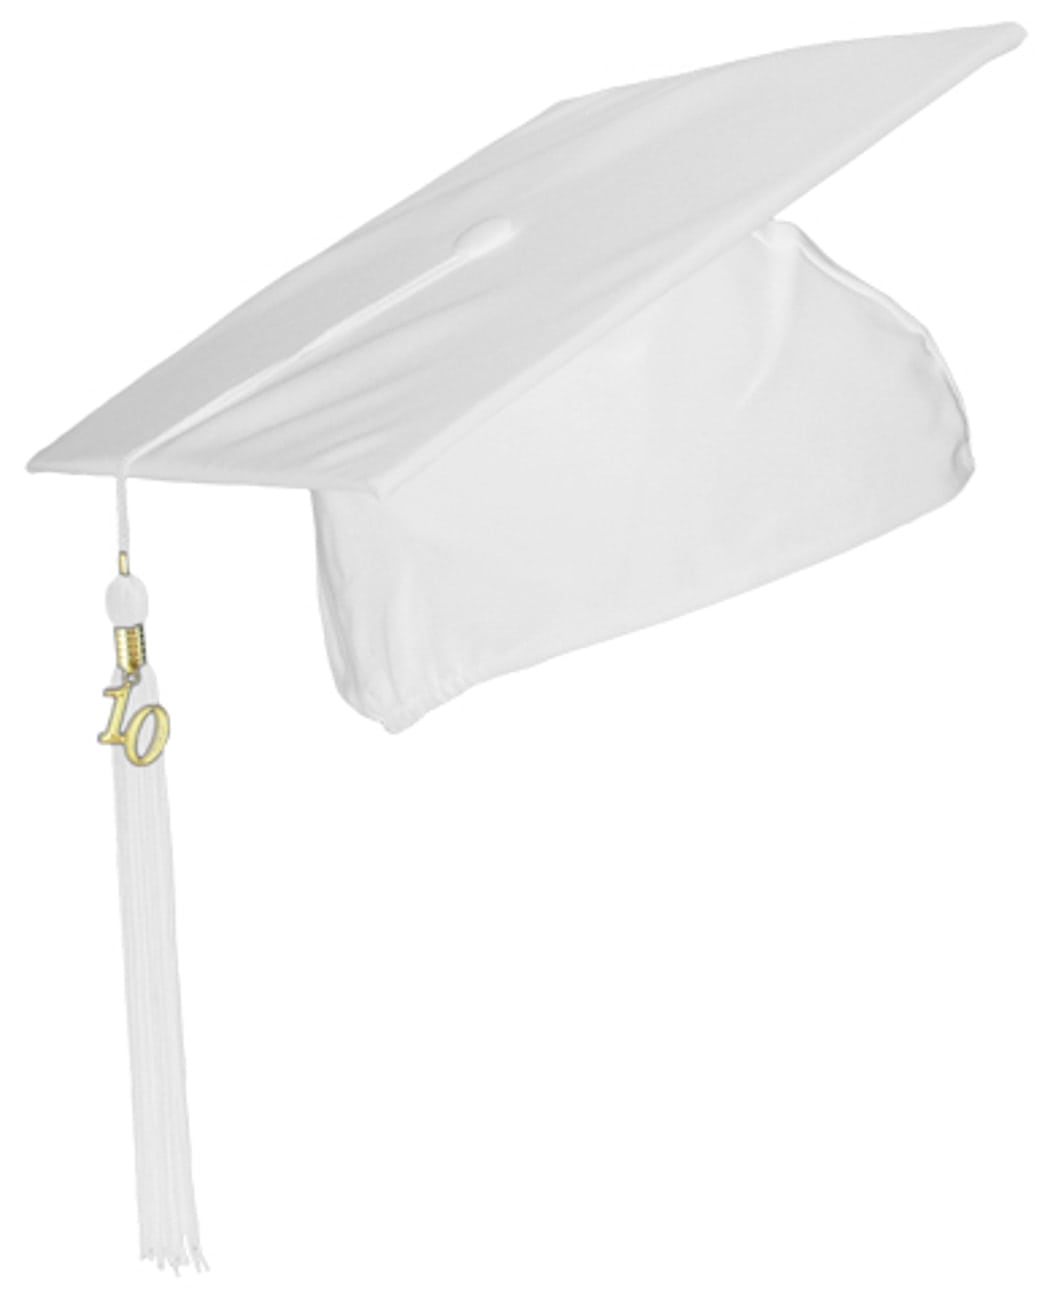 Flexible Graduation Hat by Lierys - 21,95 €